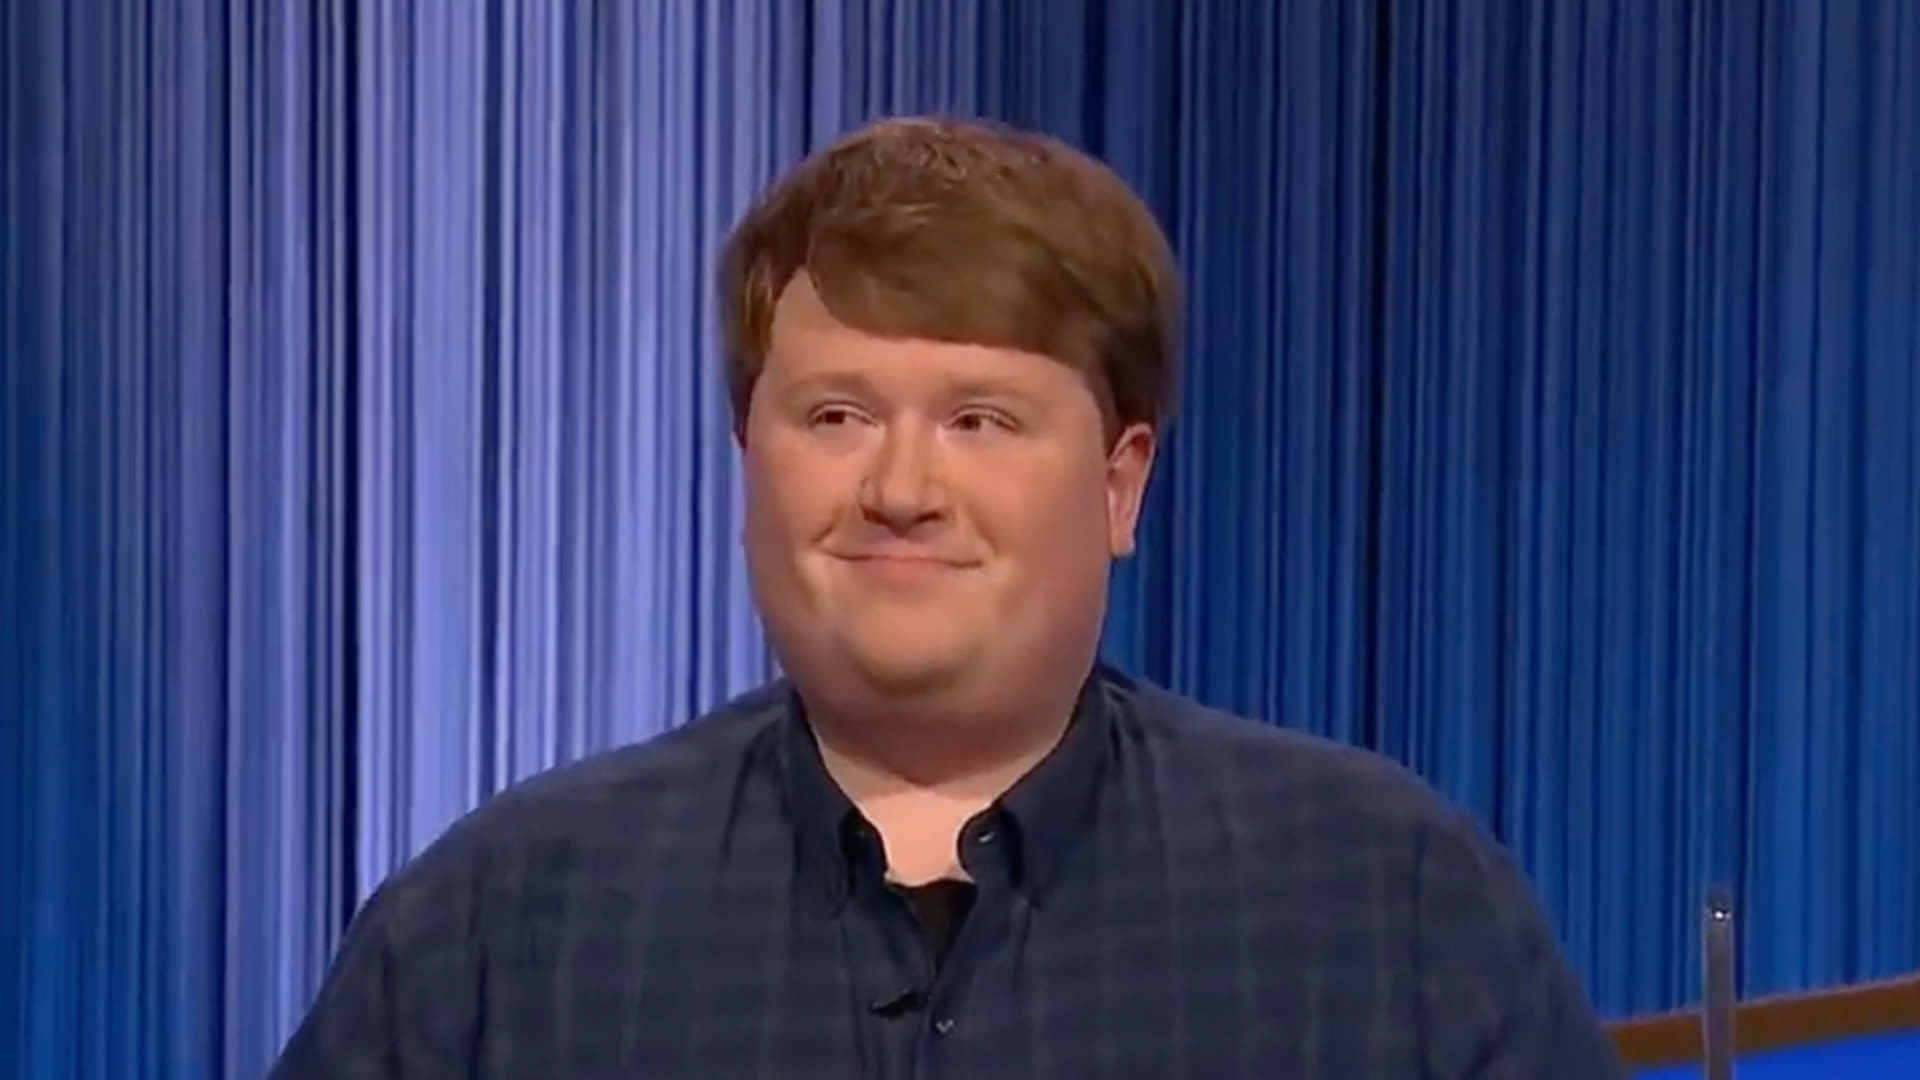 Jeopardy! newbie earns praise from Ken Jennings after risky gamble